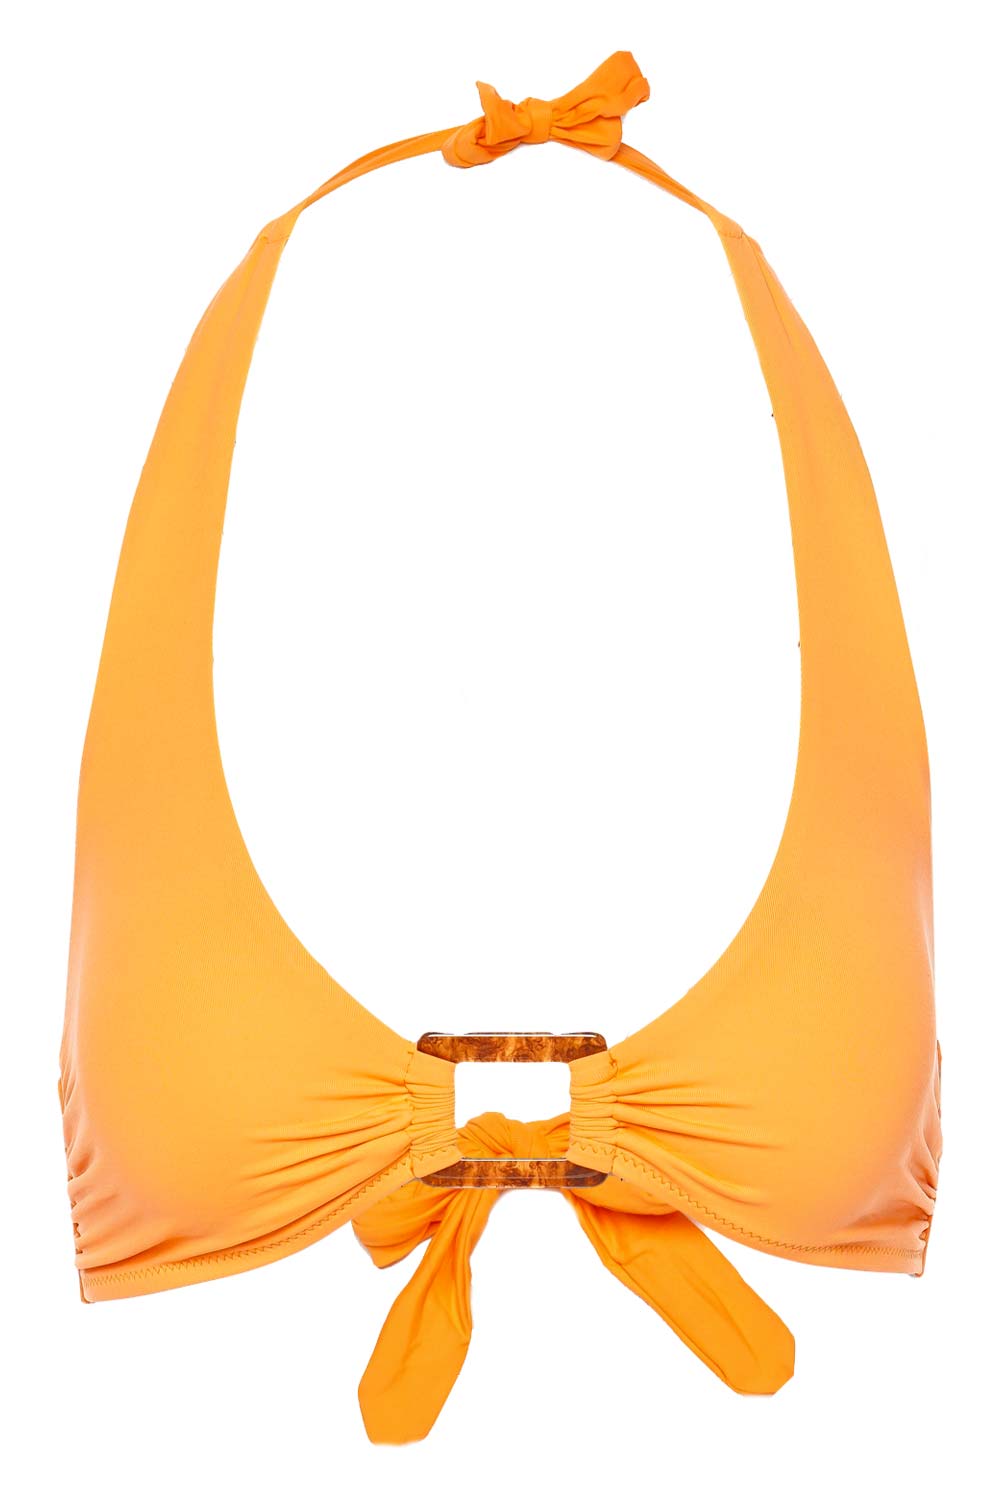 Melissa Odabash Paris Orange Halter Bikini Top